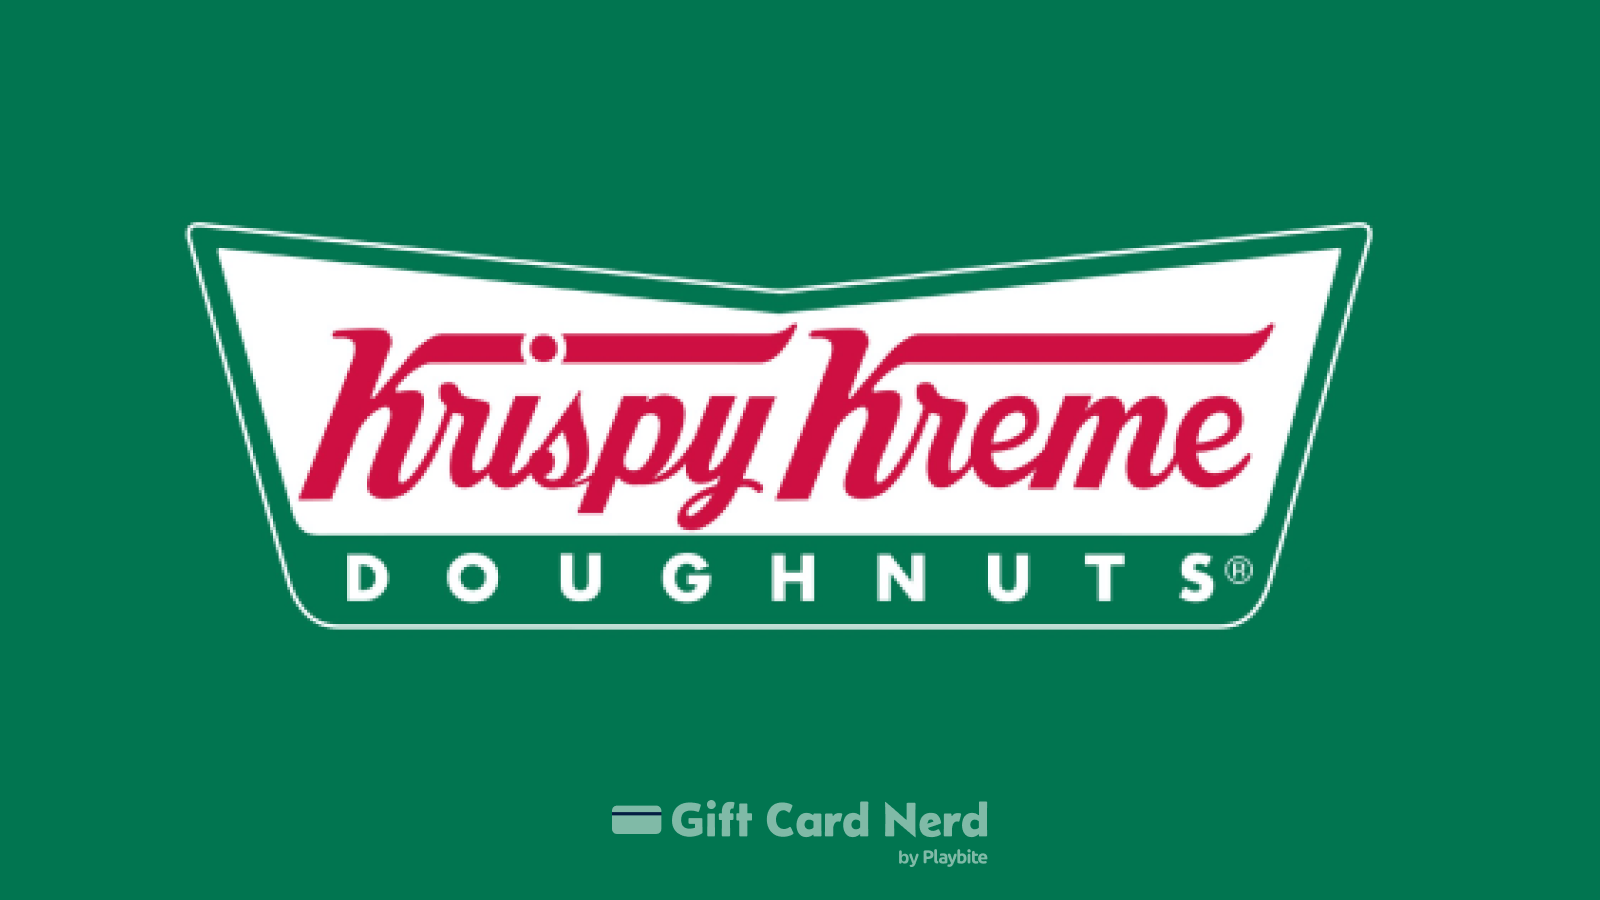 How to Check Your Krispy Kreme Gift Card Balance